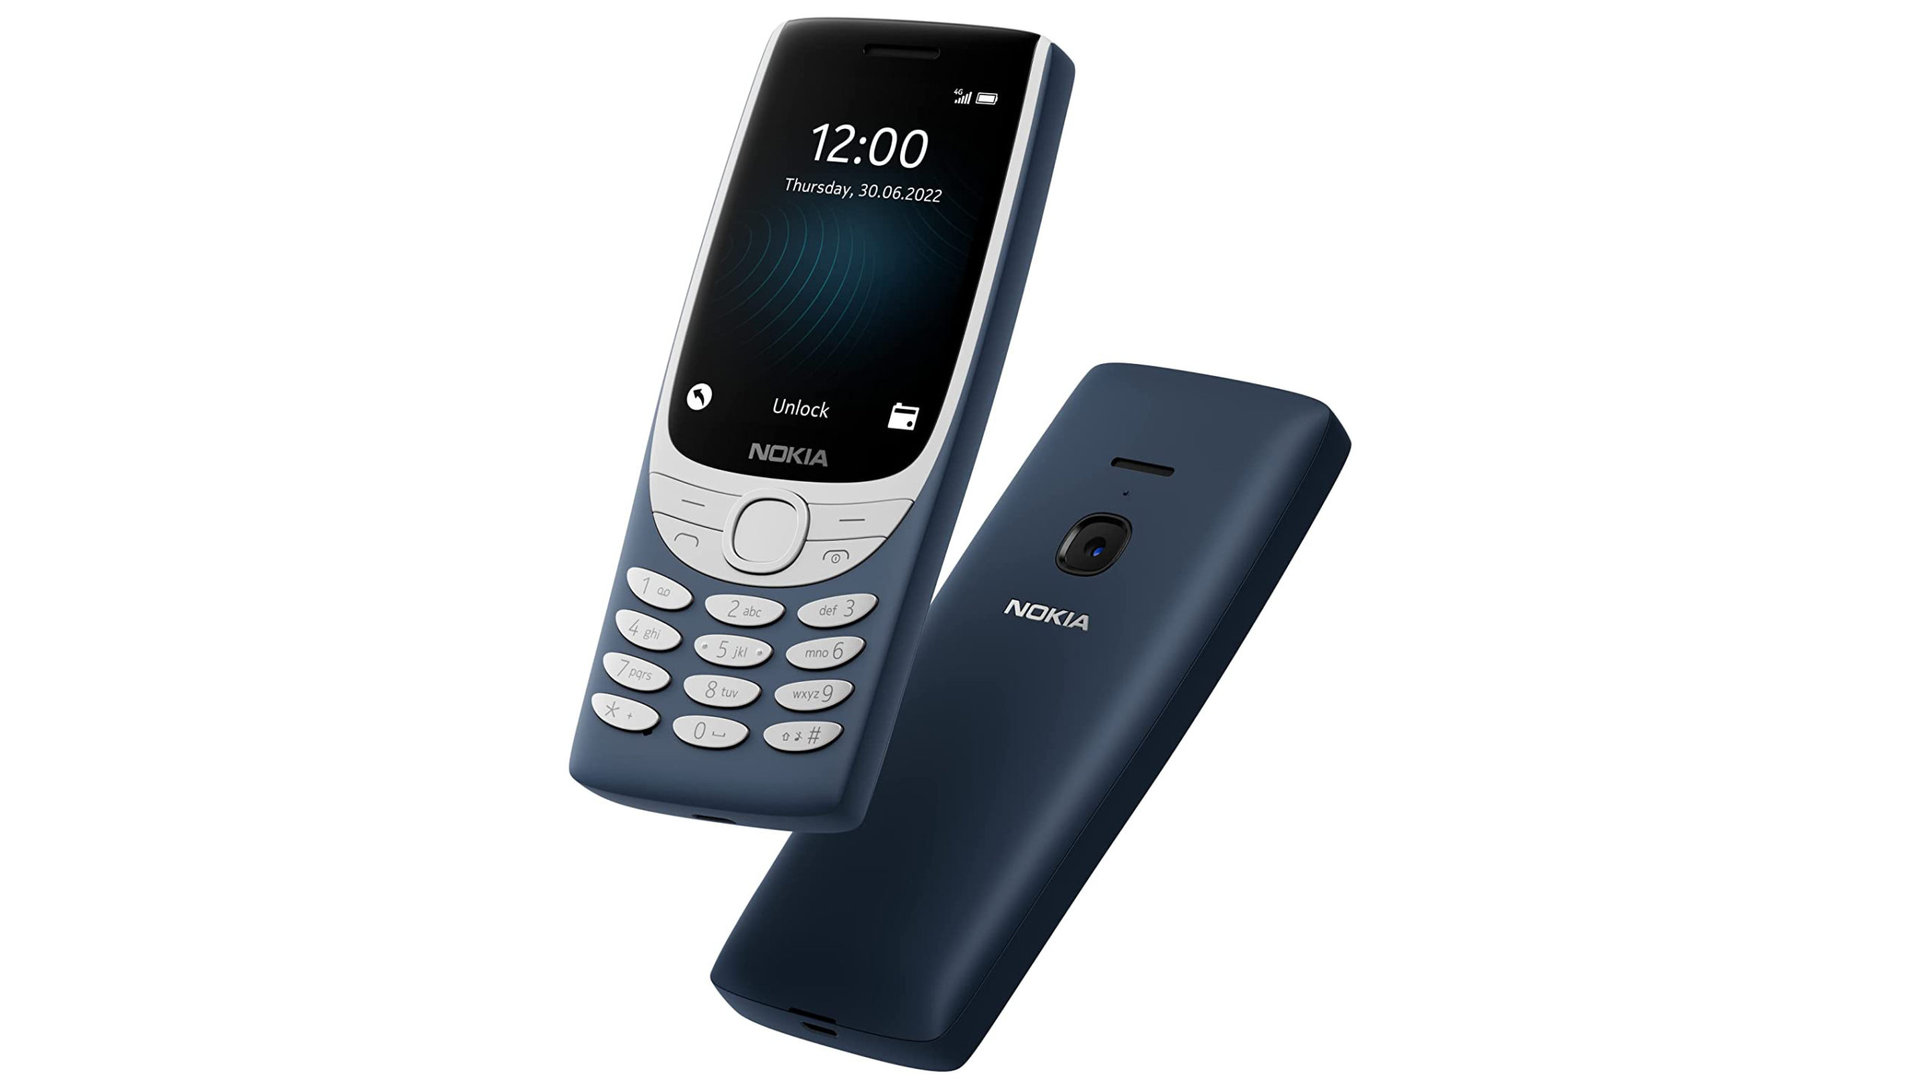 Nokia 8210 4G - Phones for seniors